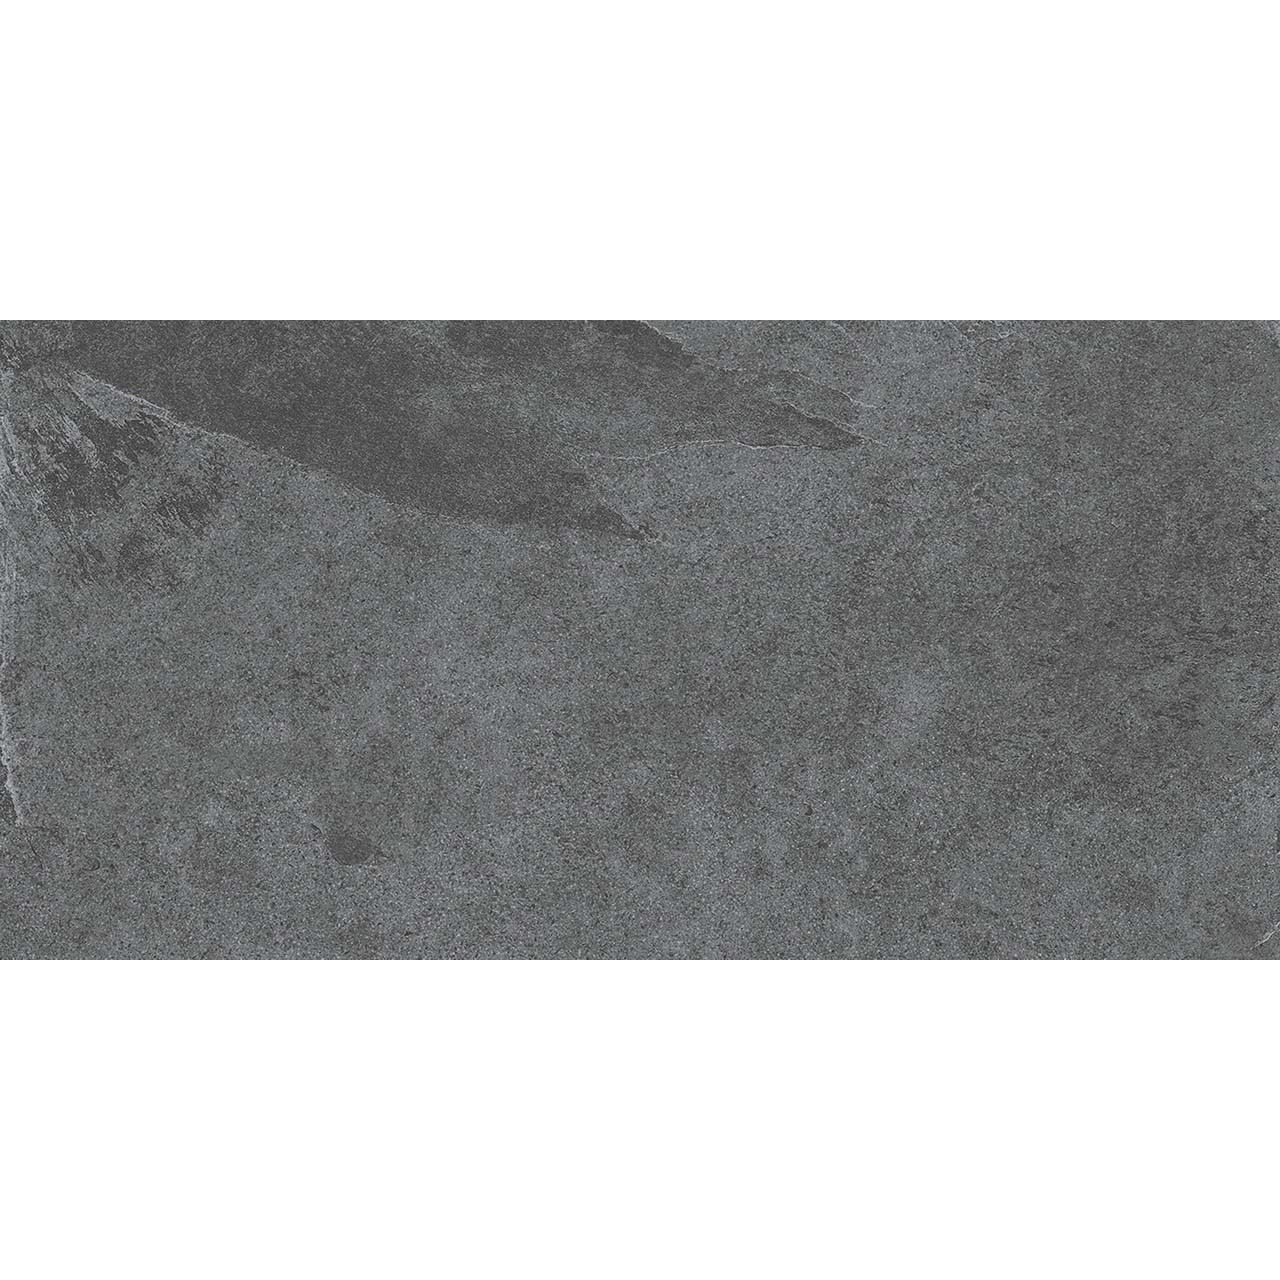 Плитка Estima Terra TE03 неполированный темно-серый 60x120 см плитка estima traffic tf03 неполированный темно серый 60x120 см